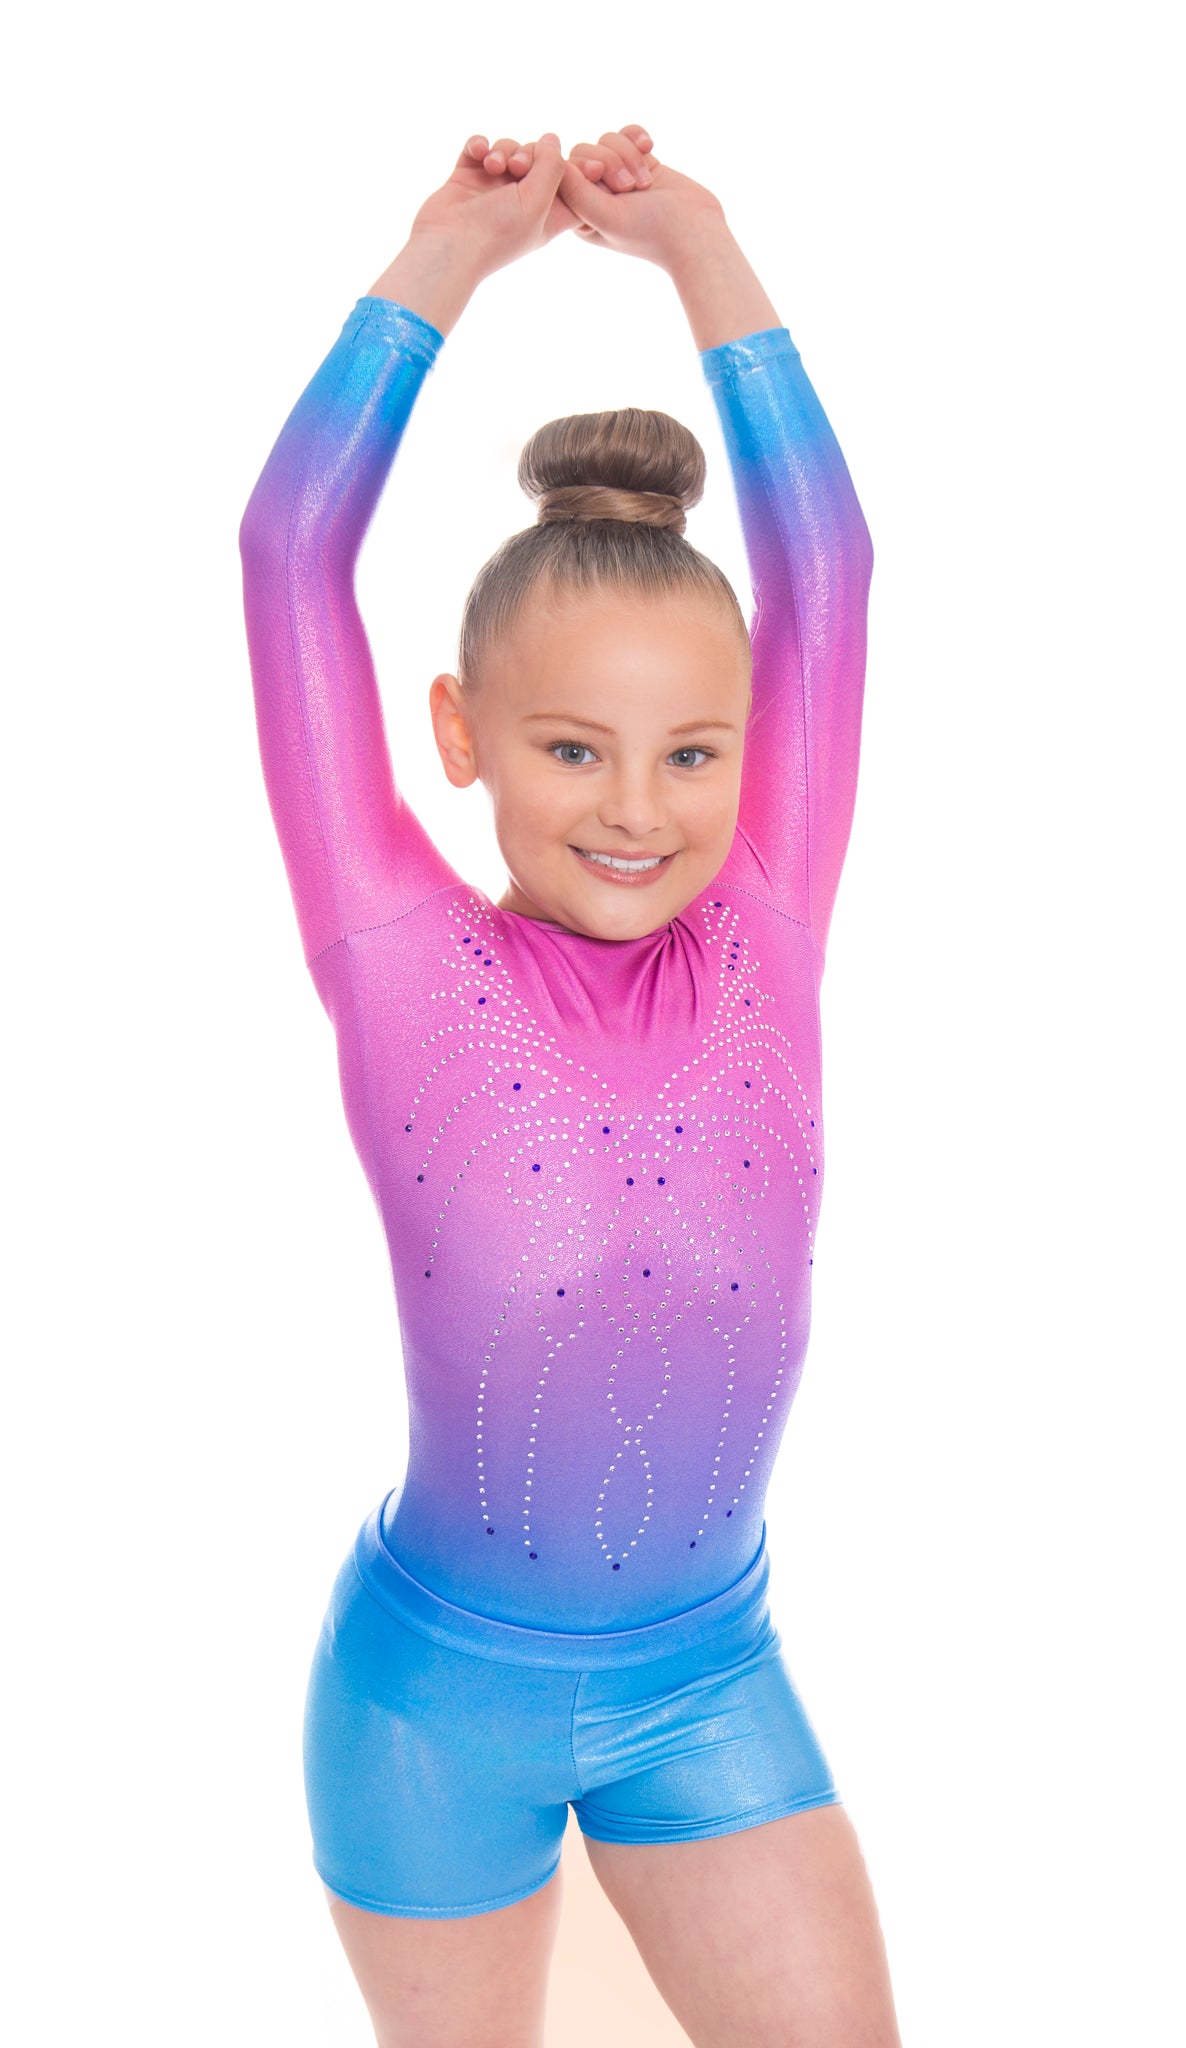 Radiant Blue Girls Gymnastics Gym Shorts – Velocity Pro Sport